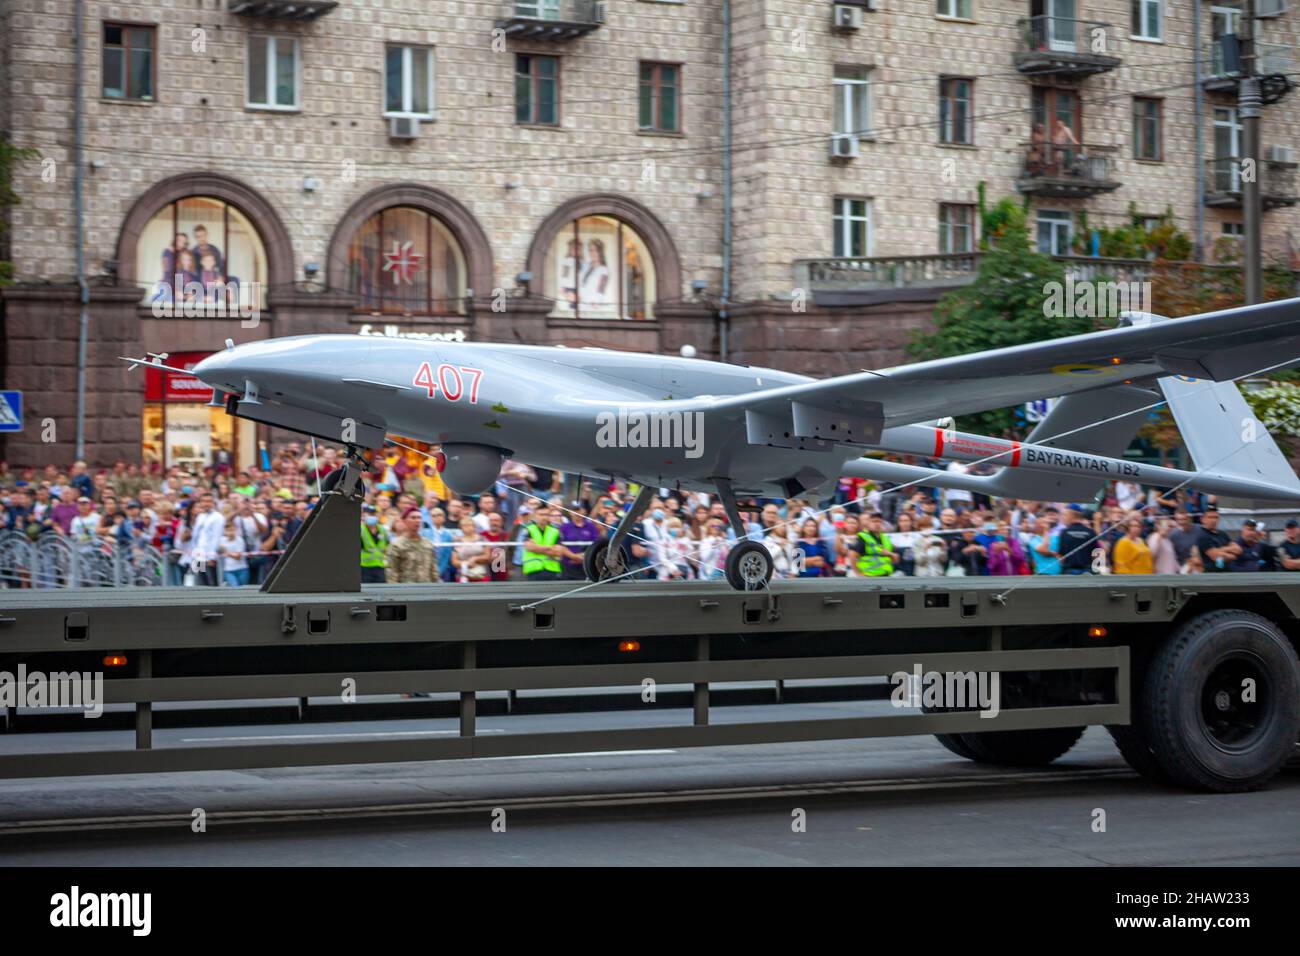 Ukraine, Kiew - 18. August 2021: Bayraktar TB2 - türkische unbemannte Flugdrohne. Militärflugzeug. Militärparade. Gepanzertes Fahrzeug. Ebene. Stockfoto